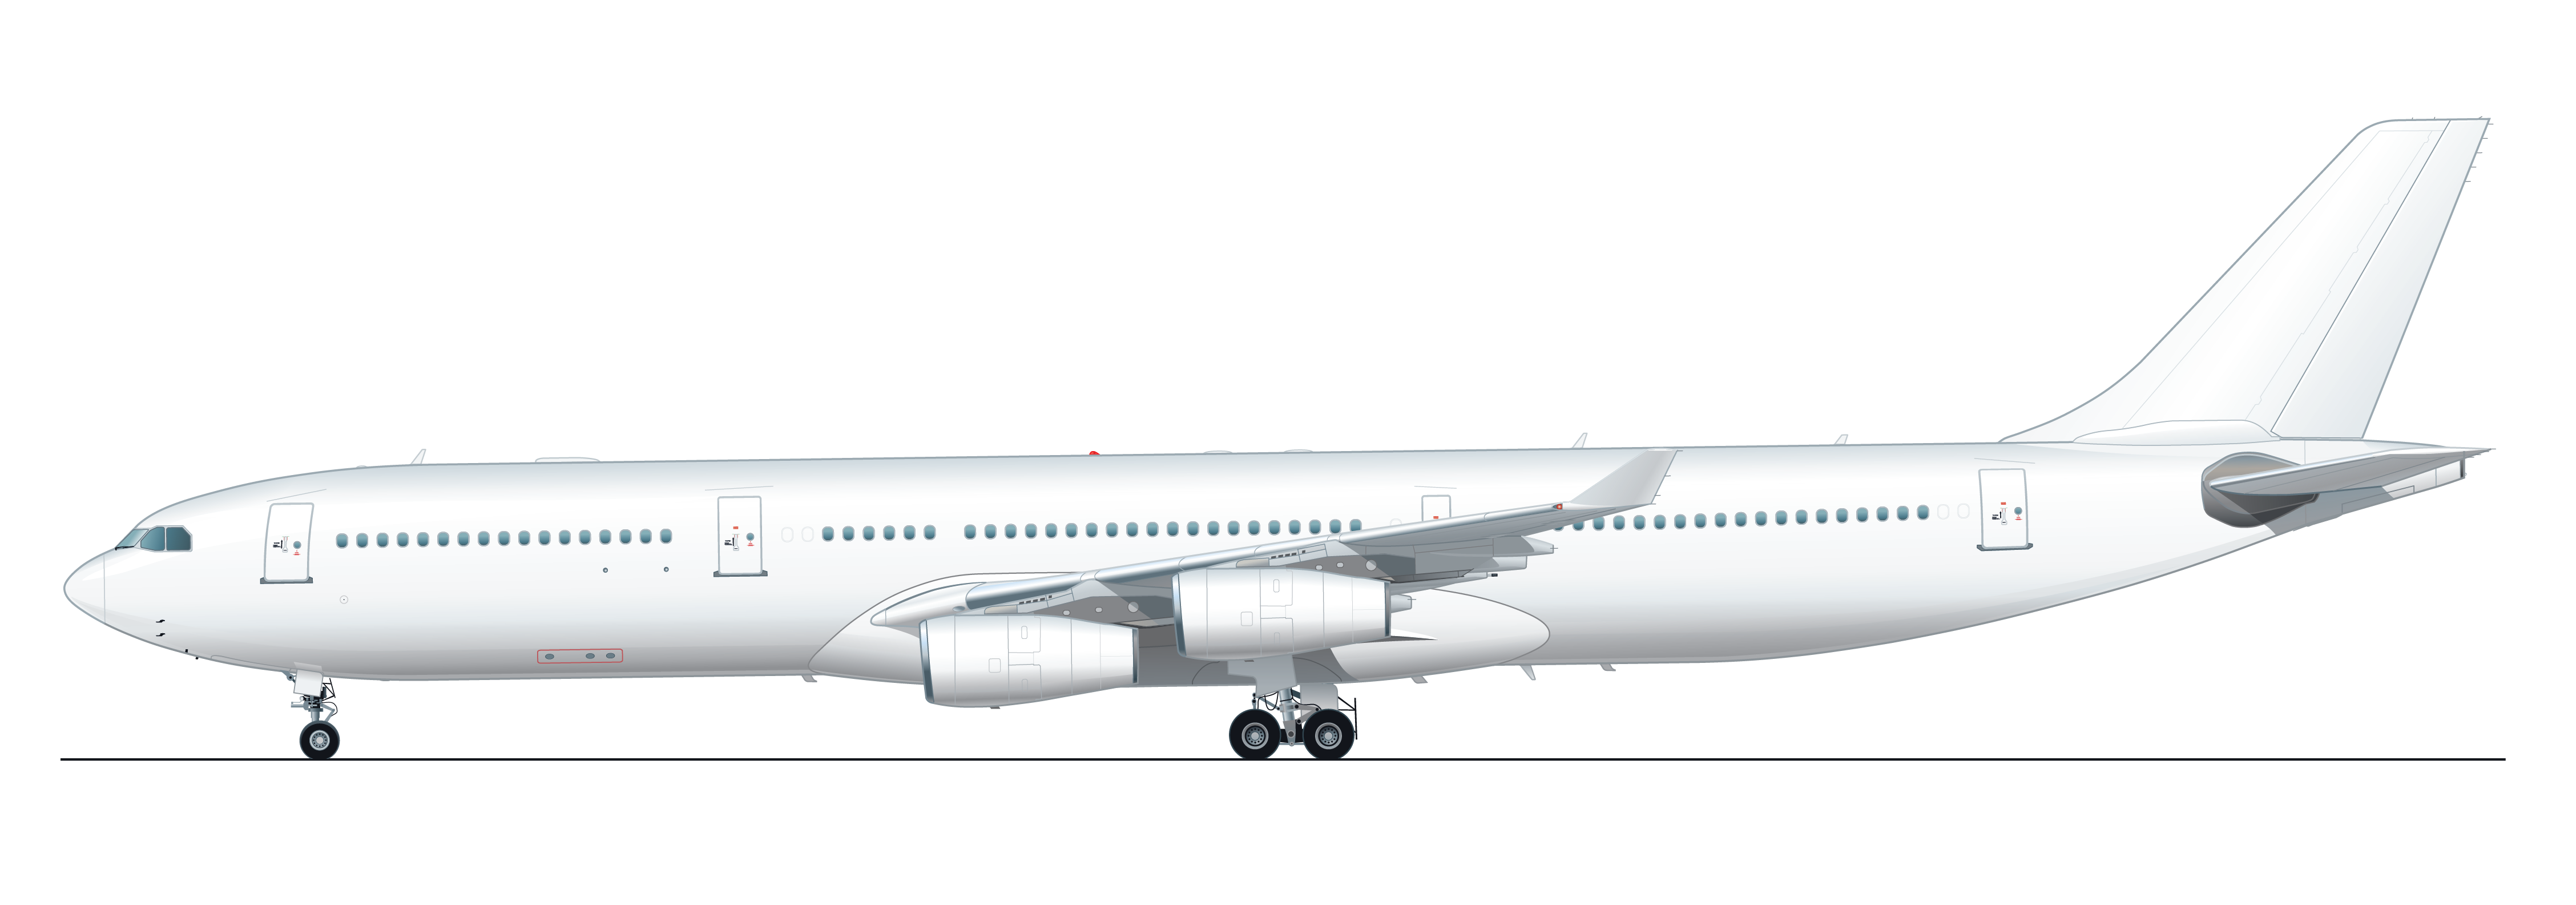 AAR A340-300